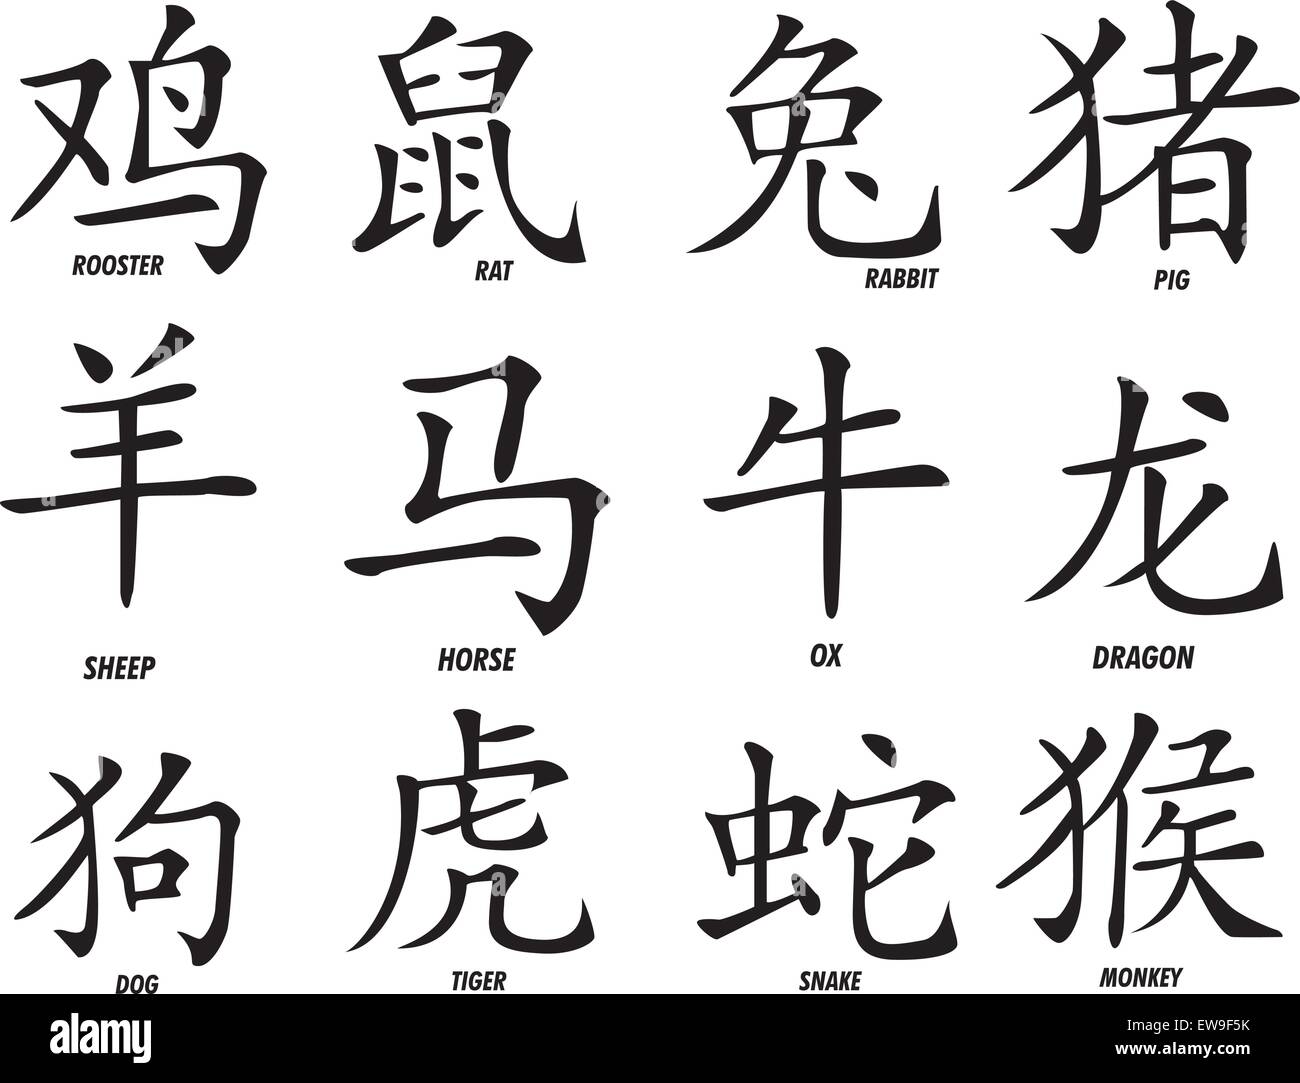 Un insieme di dodici inchiostrato dello zodiaco cinese segni o simboli astrologici e la loro definizione. La Rooster, ratto, coniglio, maiale, pecora, cavallo, Illustrazione Vettoriale